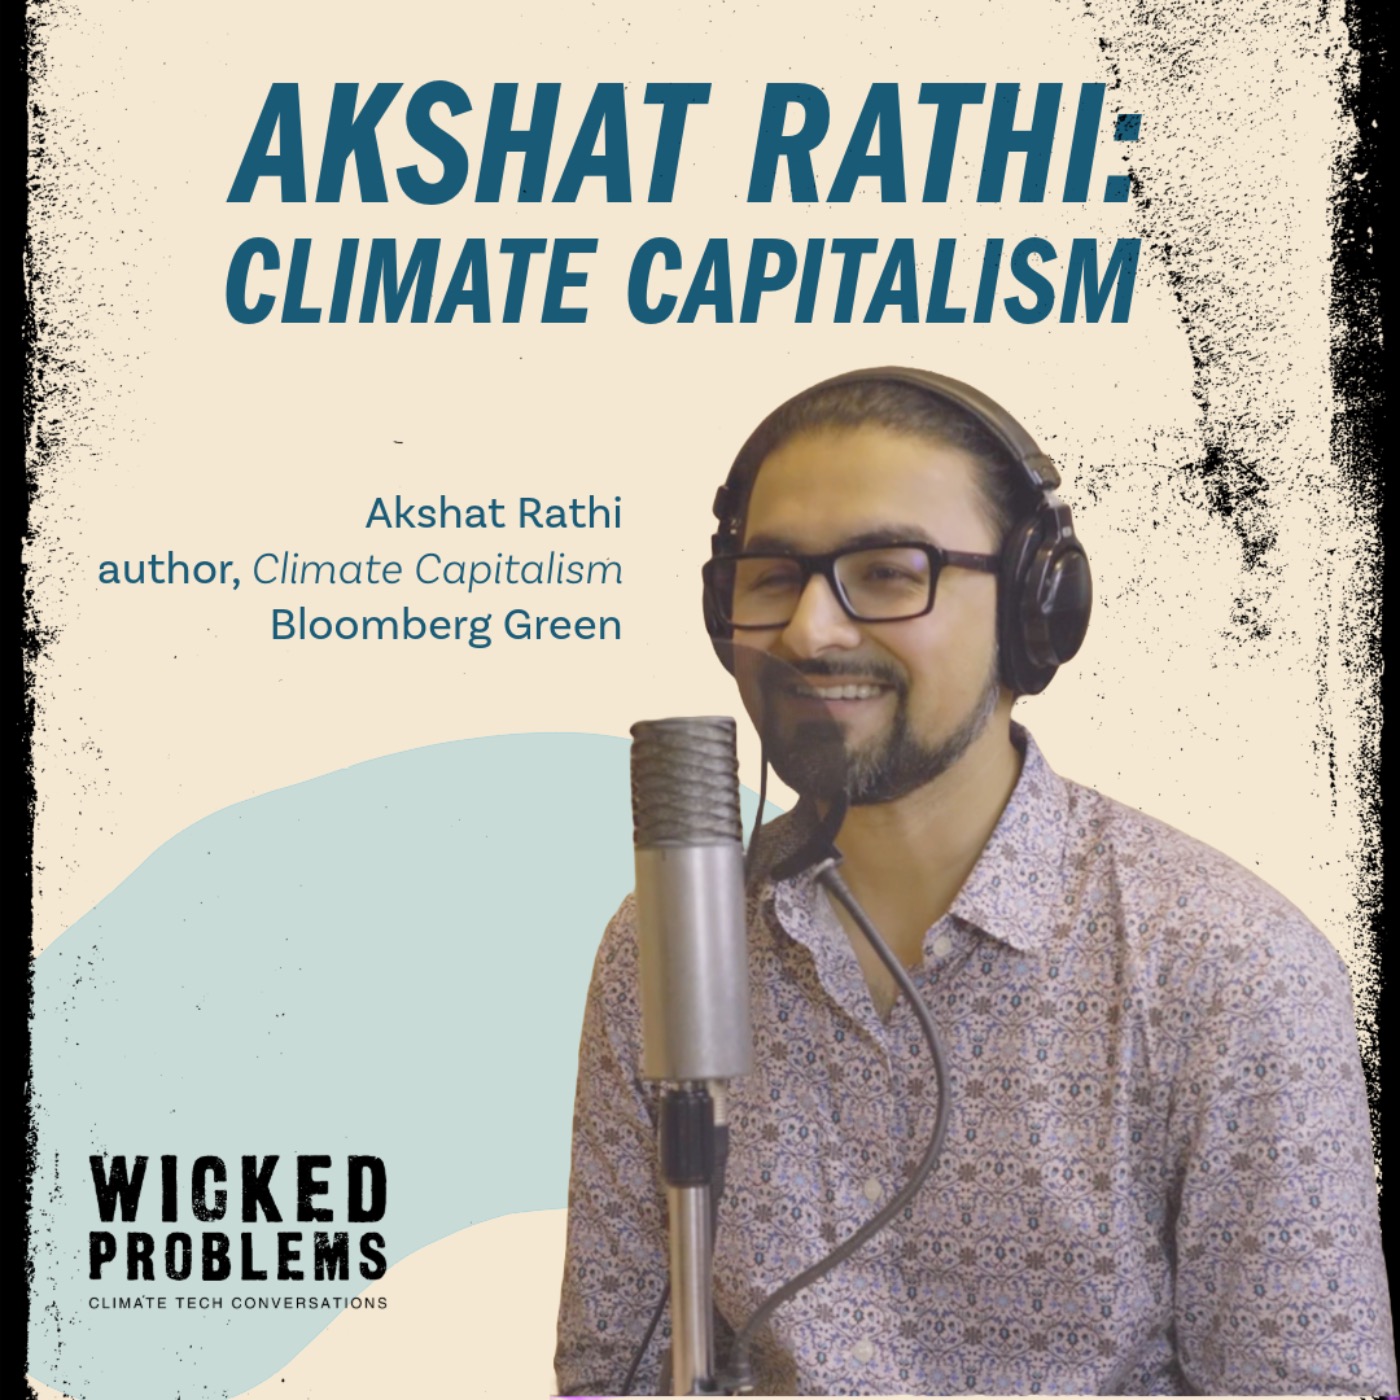 Akshat Rathi: Climate Capitalism